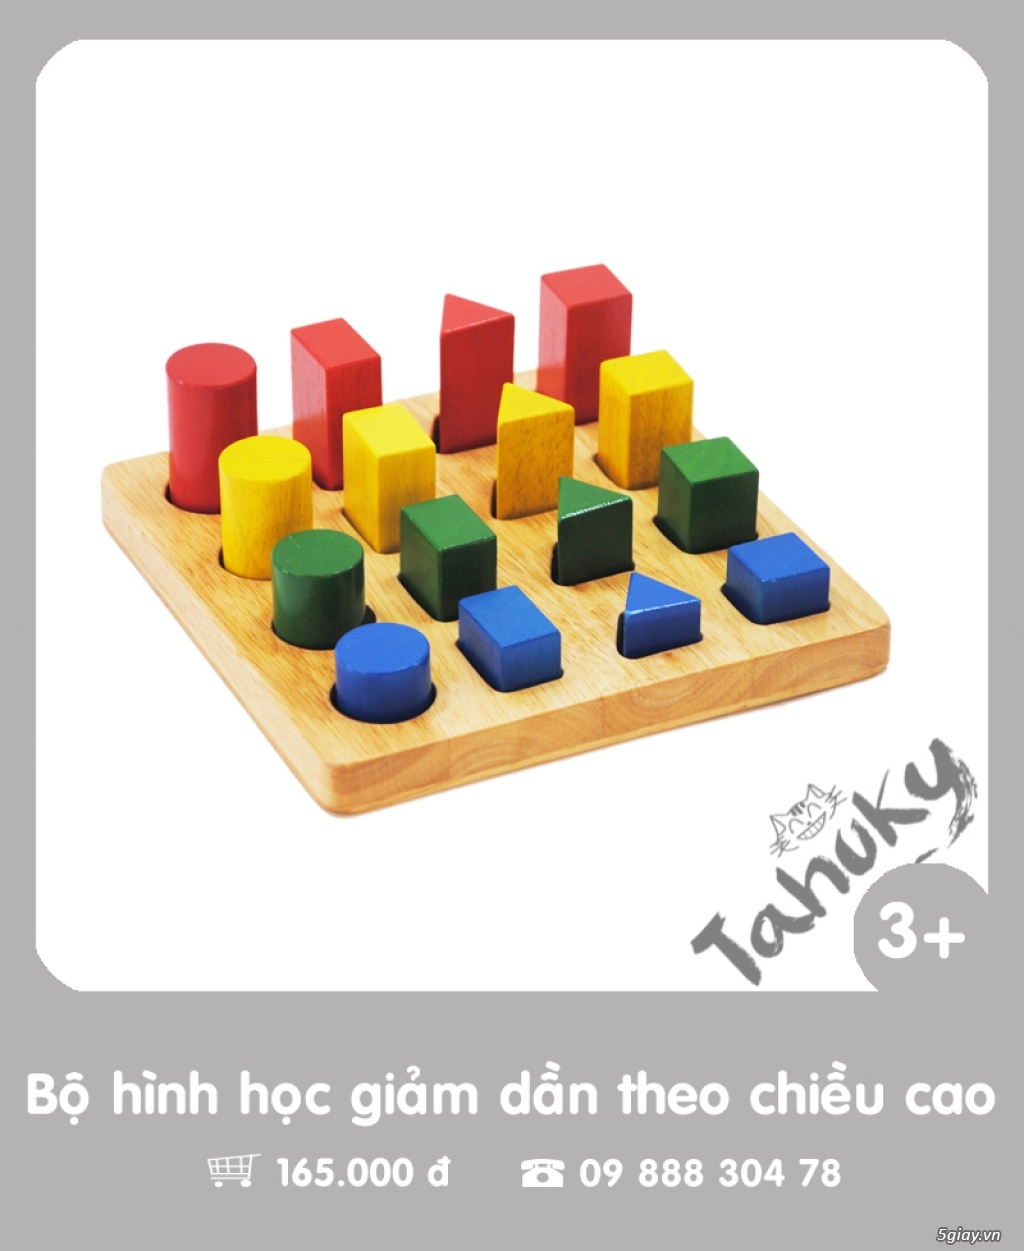 Đồ chơi gỗ an toàn Tahuky (dành cho bé từ 3-5 tuổi) - 2